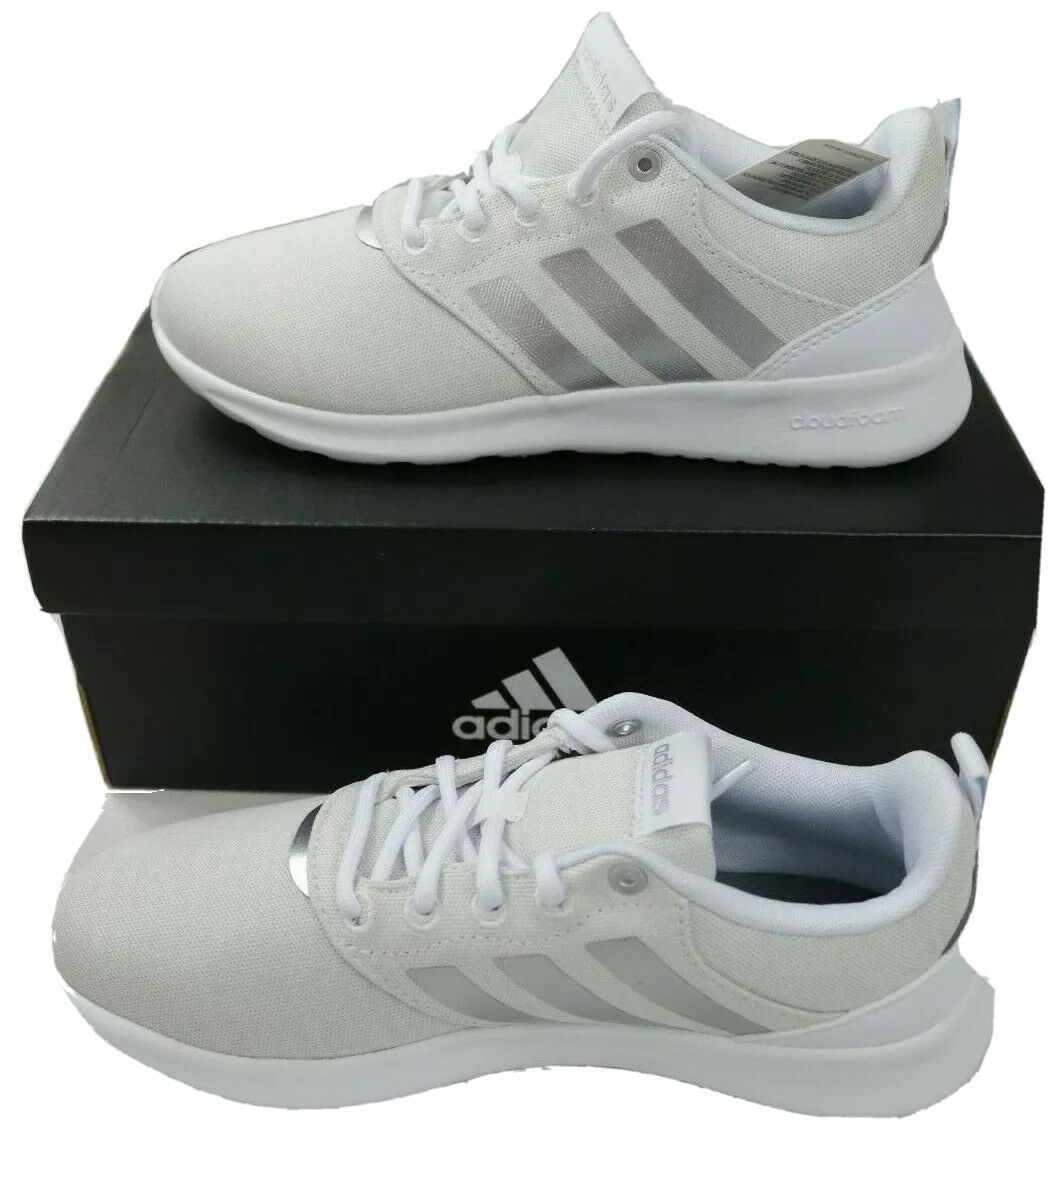 ADIDAS QT Racer 2.0 Women Girls Running Sneaker Shoes FV9612 White Gray Size 5